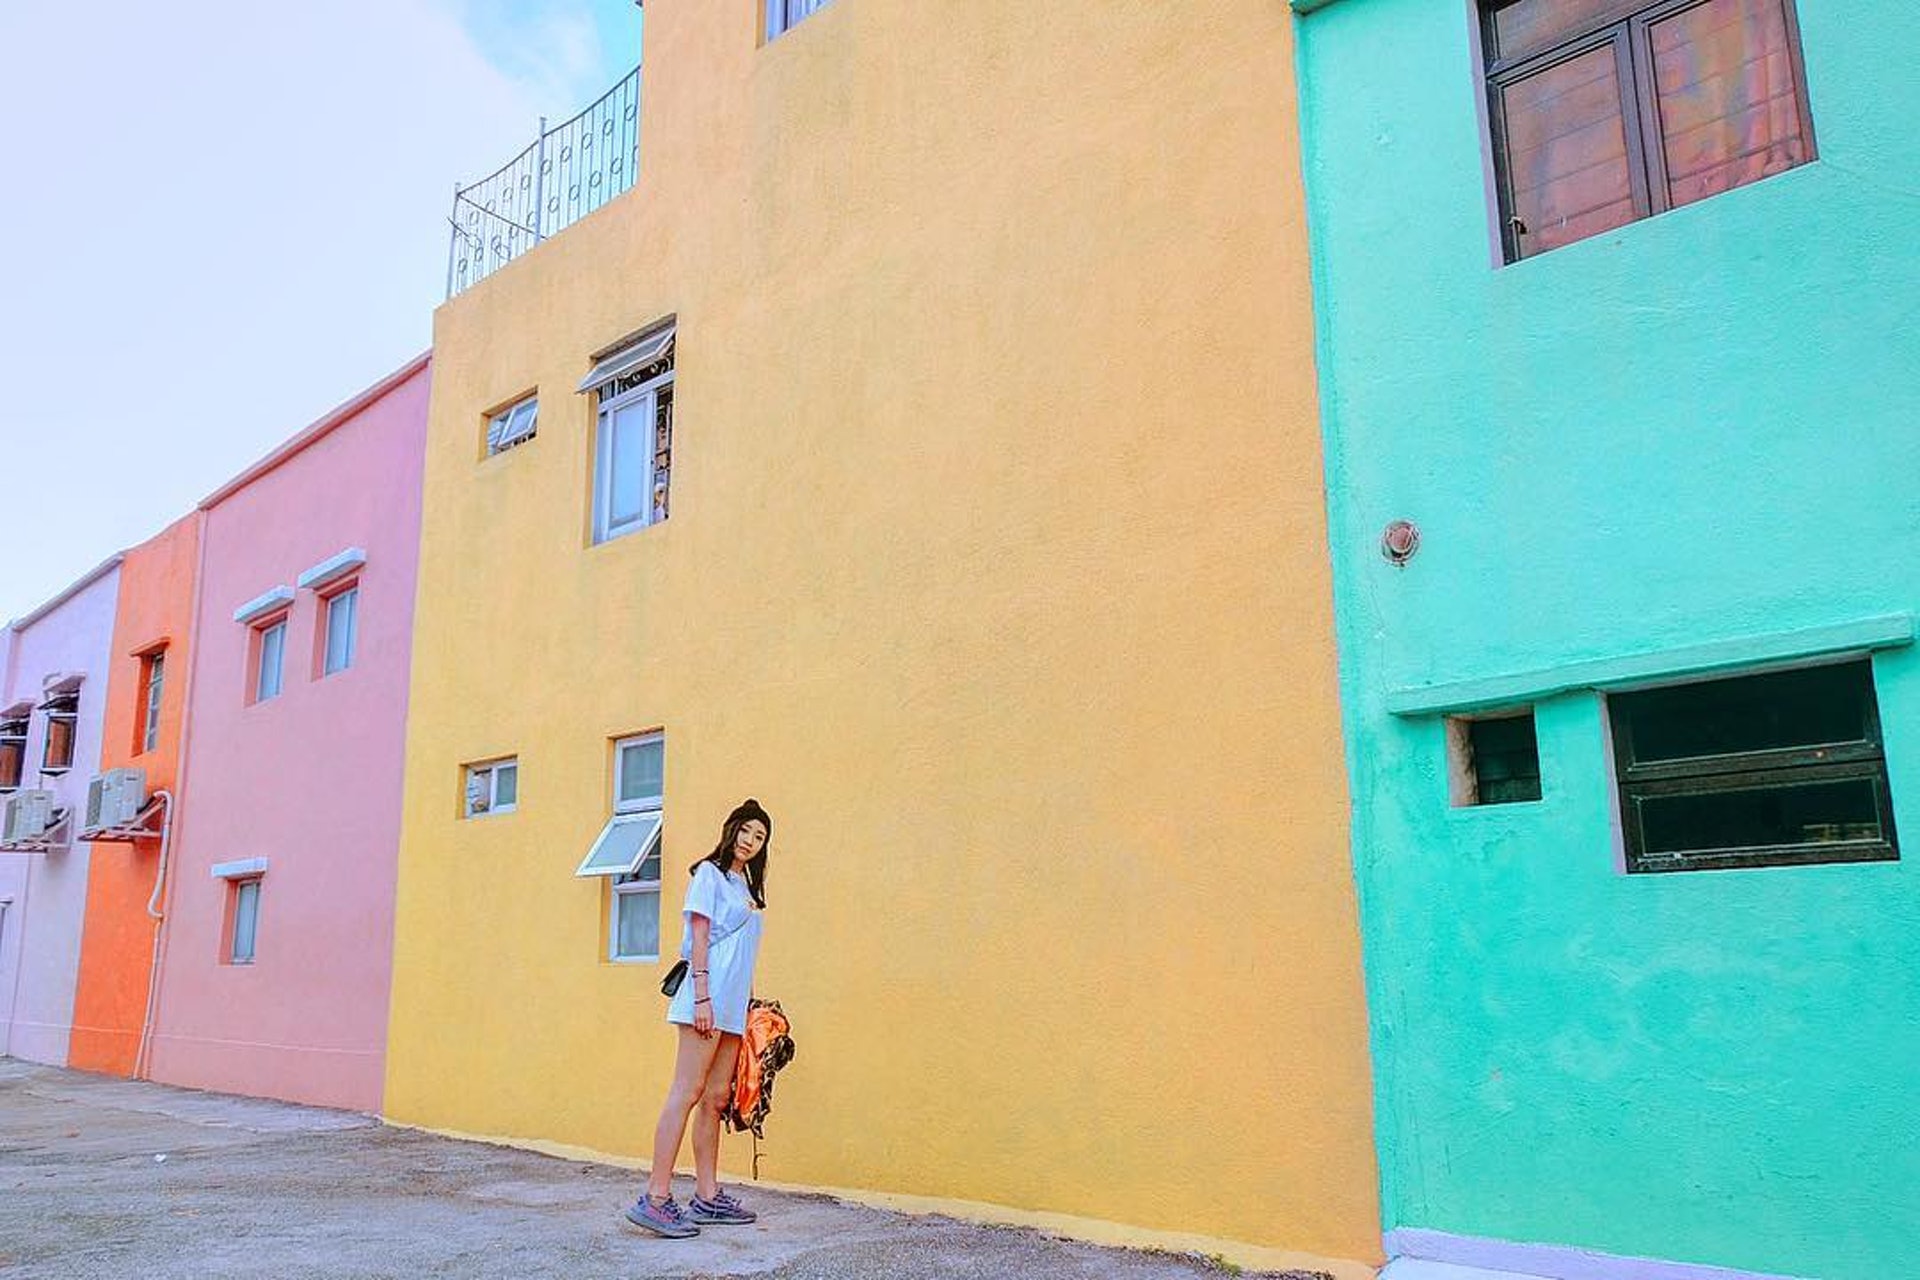 【2】彩虹屋
一列並排的屋子被刷上粉紅、橙、薄荷綠色，堪稱路環最紅打卡熱點的「彩虹屋」也是必去的。（Instagram@evachanyeewah）